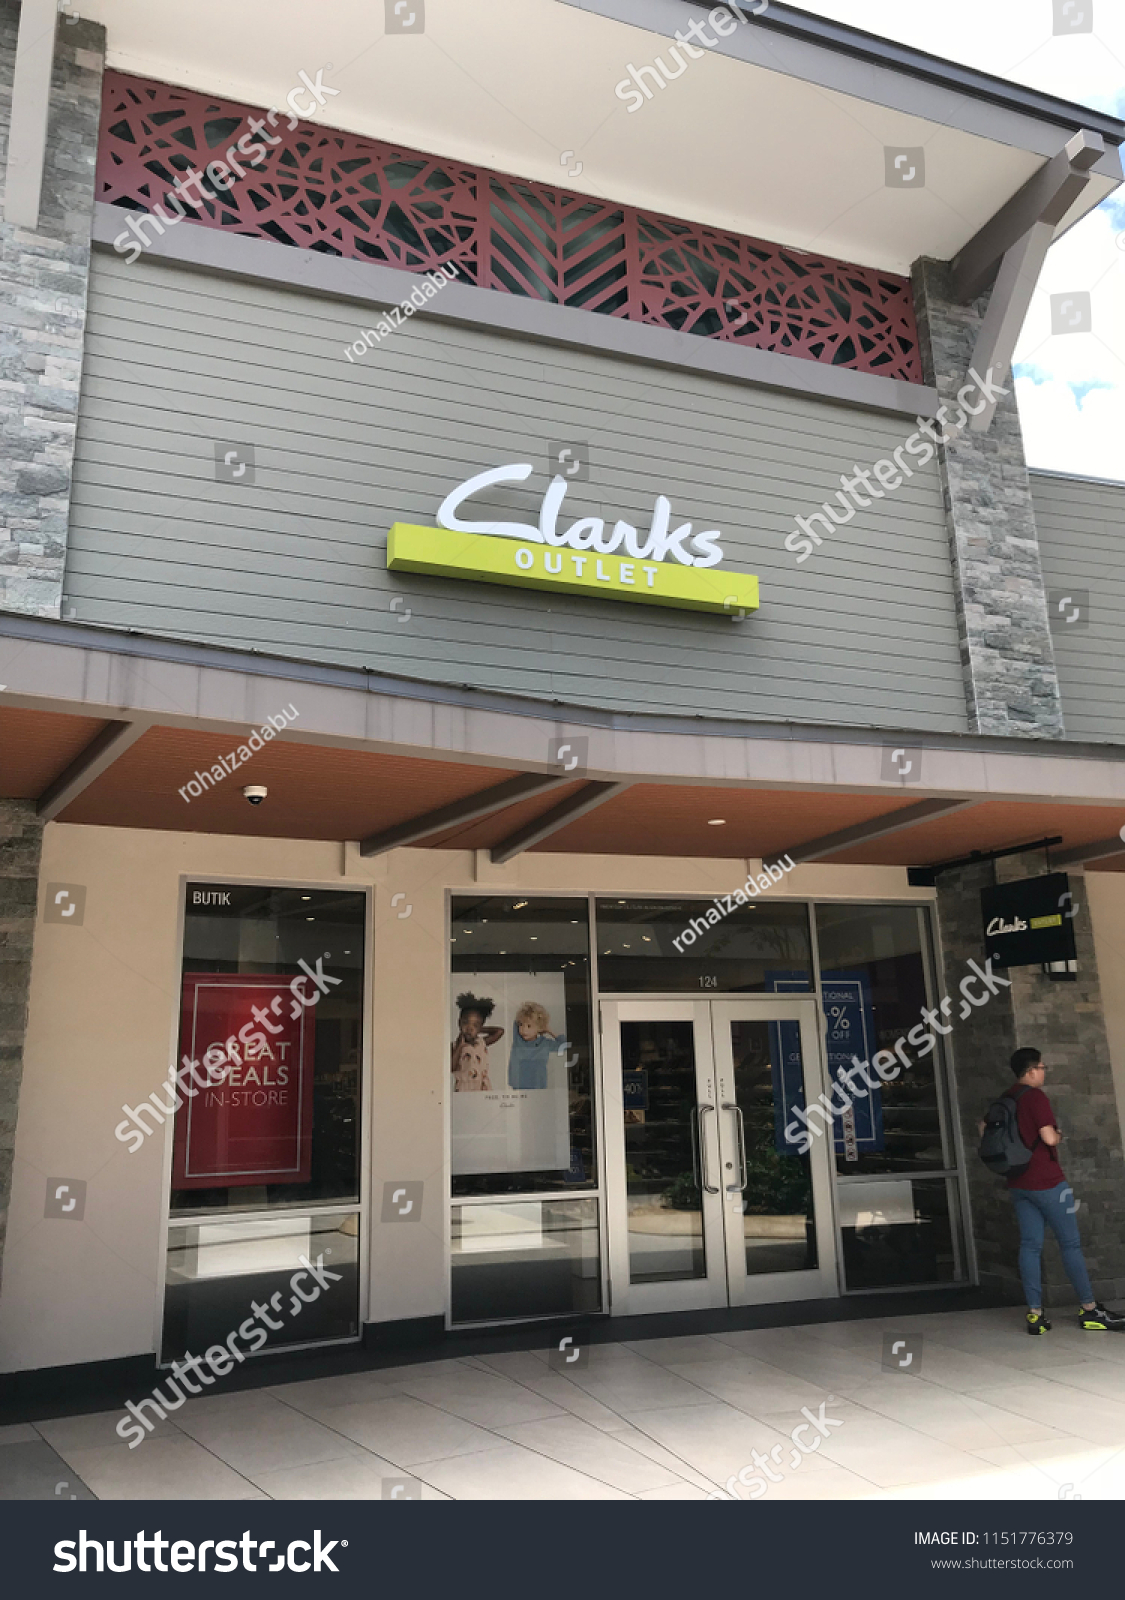 clarks premium outlet